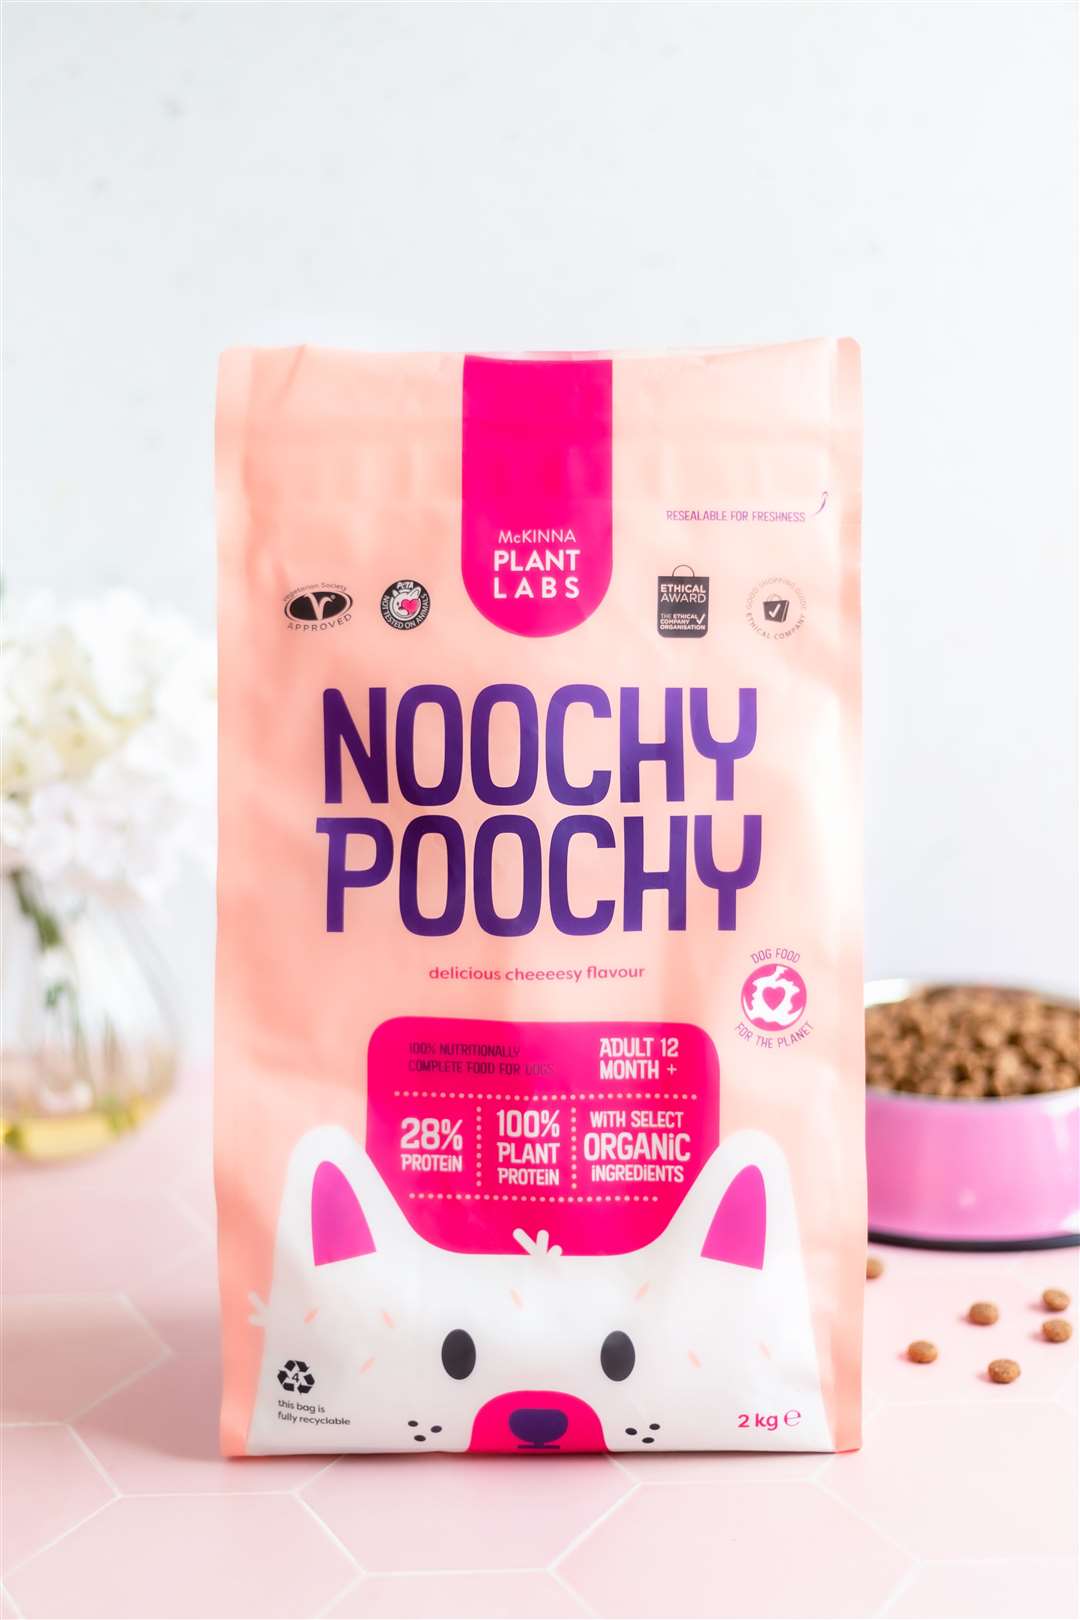 Noochy Poochy Pet Food